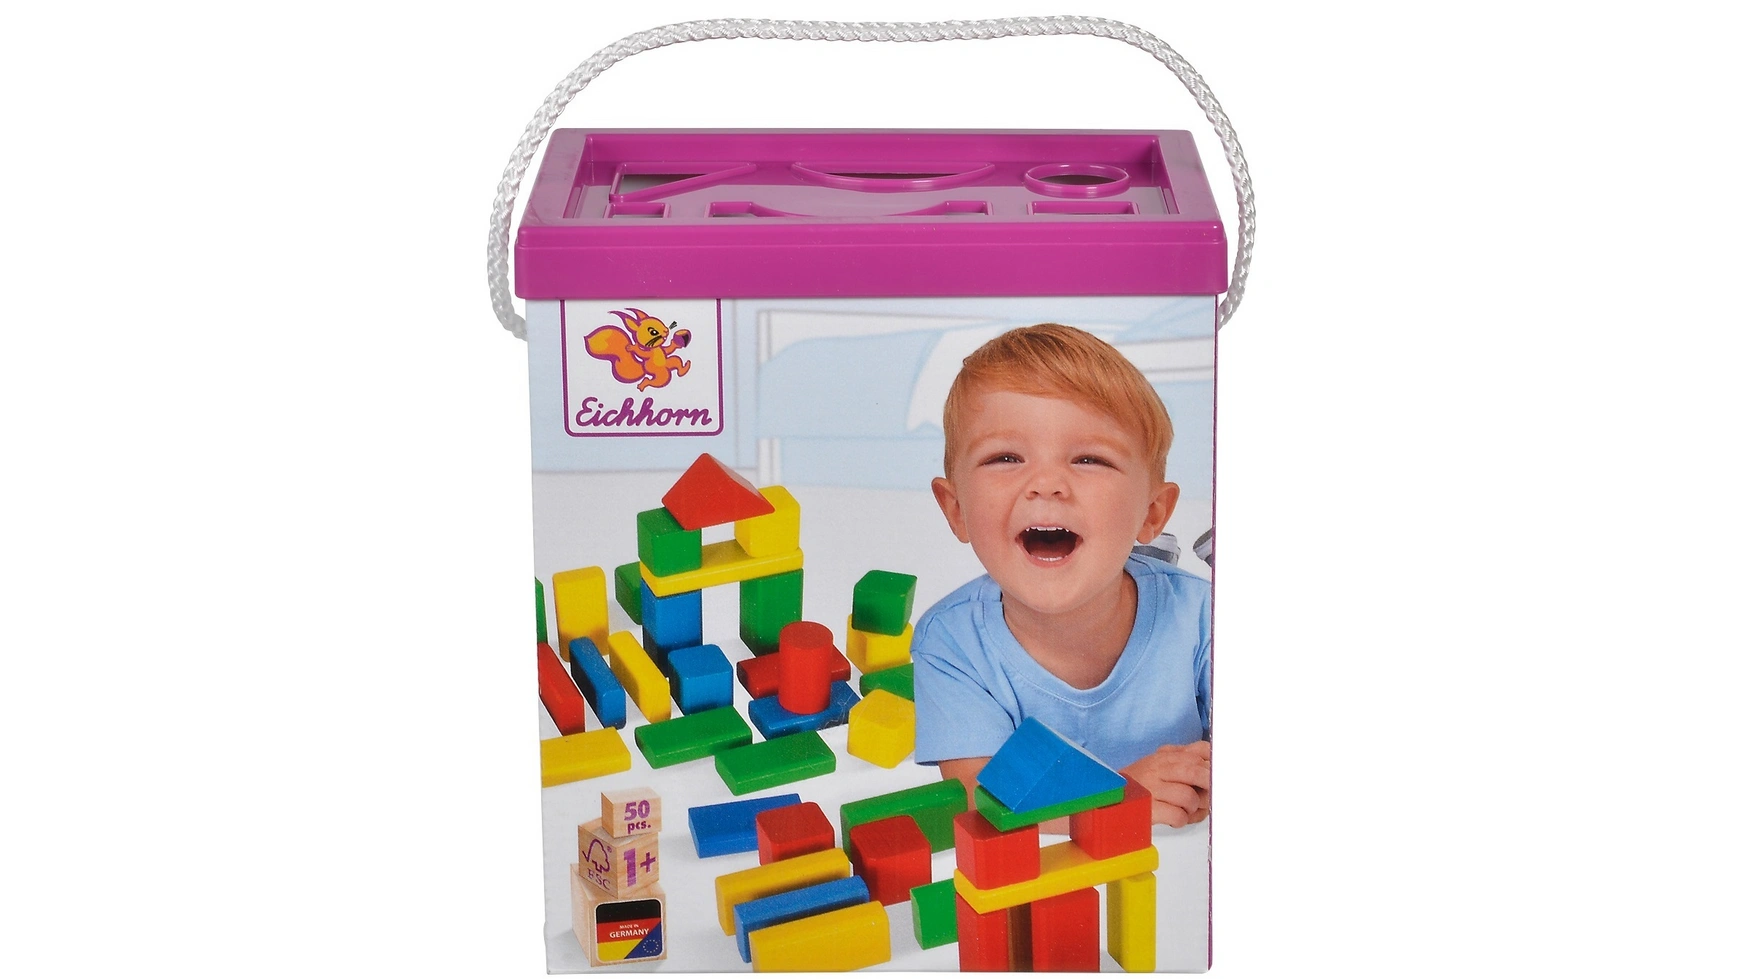 Eichhorn Коробка из 50 красочных деревянных строительных блоков игрушки монтессори для детей развивающая детская головоломка интерактивная игрушечная машина для детей деревянные строительные блоки р